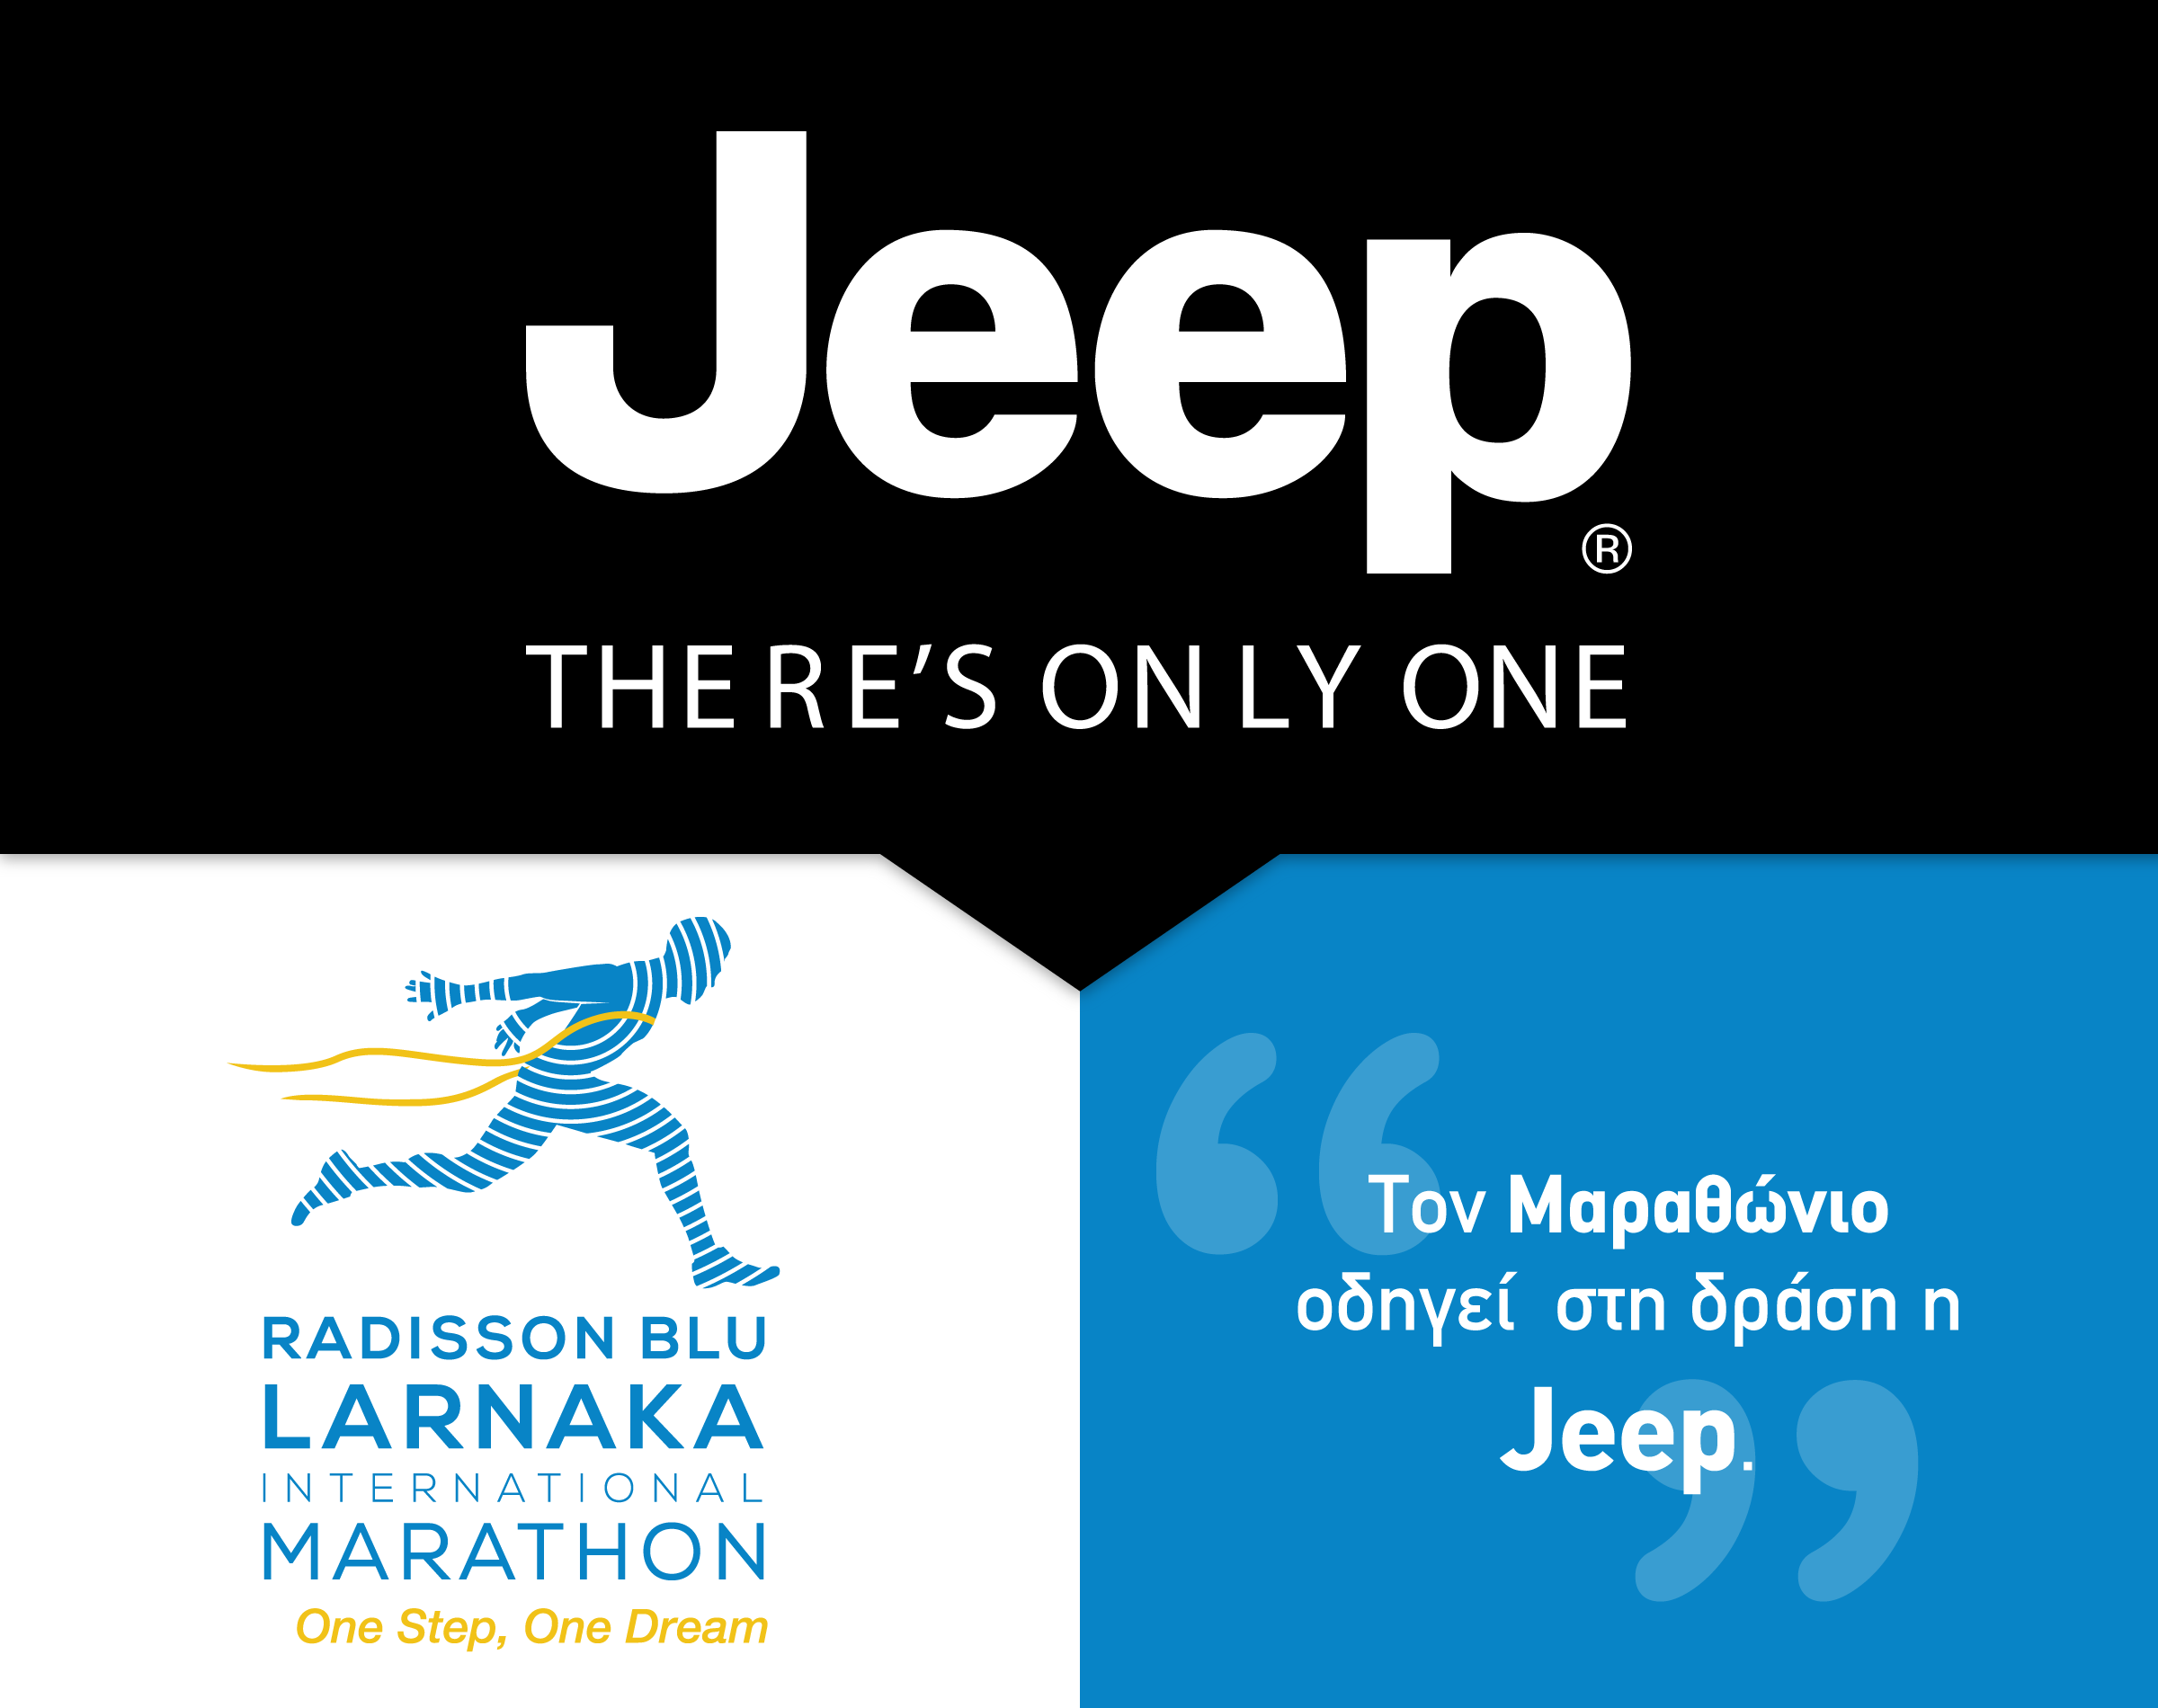 Τον 2ο Radisson Blu Διεθνή Μαραθώνιο Λάρνακας οδηγεί στη δράση η Jeep